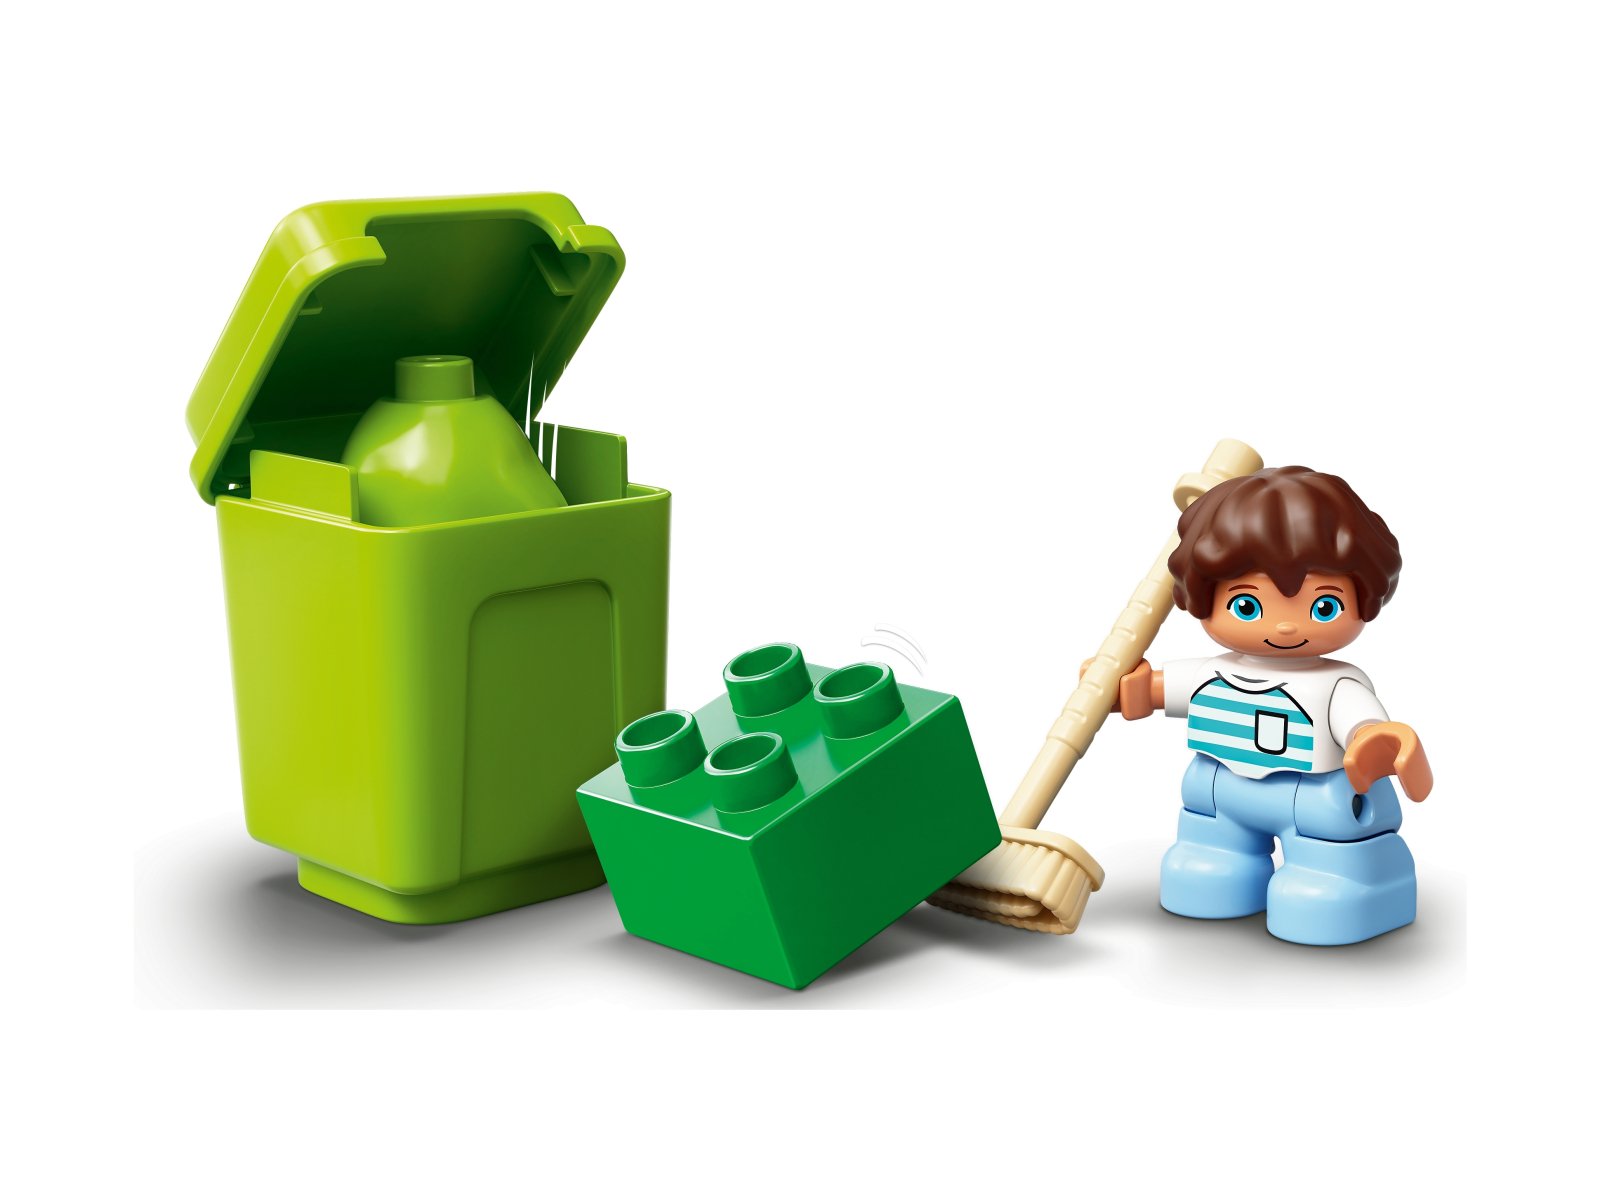 LEGO Duplo 10945 Śmieciarka i recykling